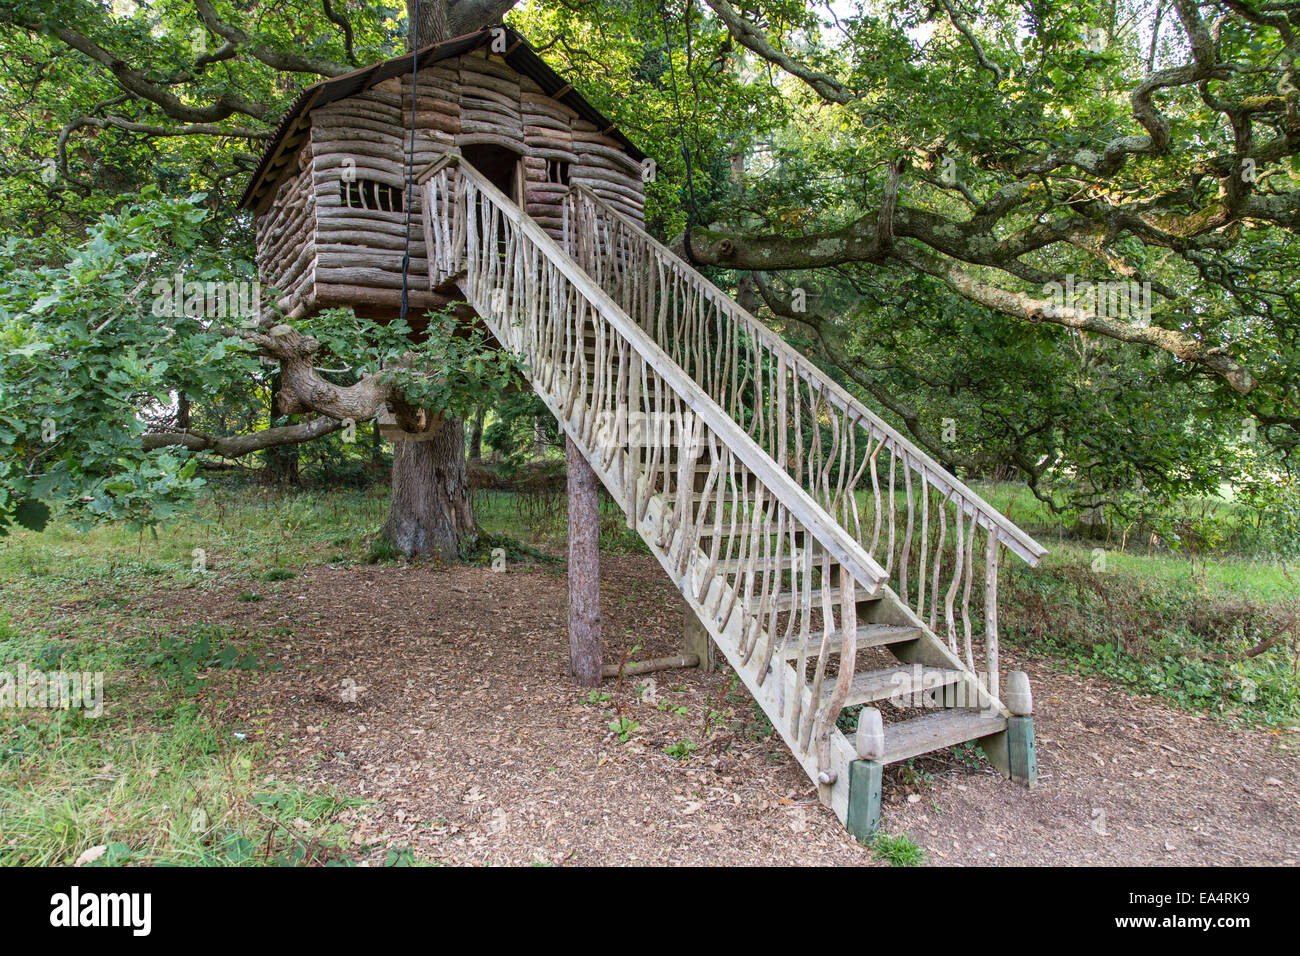 Maison de l'arbre en bois, Plas Newydd Country House and Gardens, Anglesey, au nord du Pays de Galles, Royaume-Uni Banque D'Images